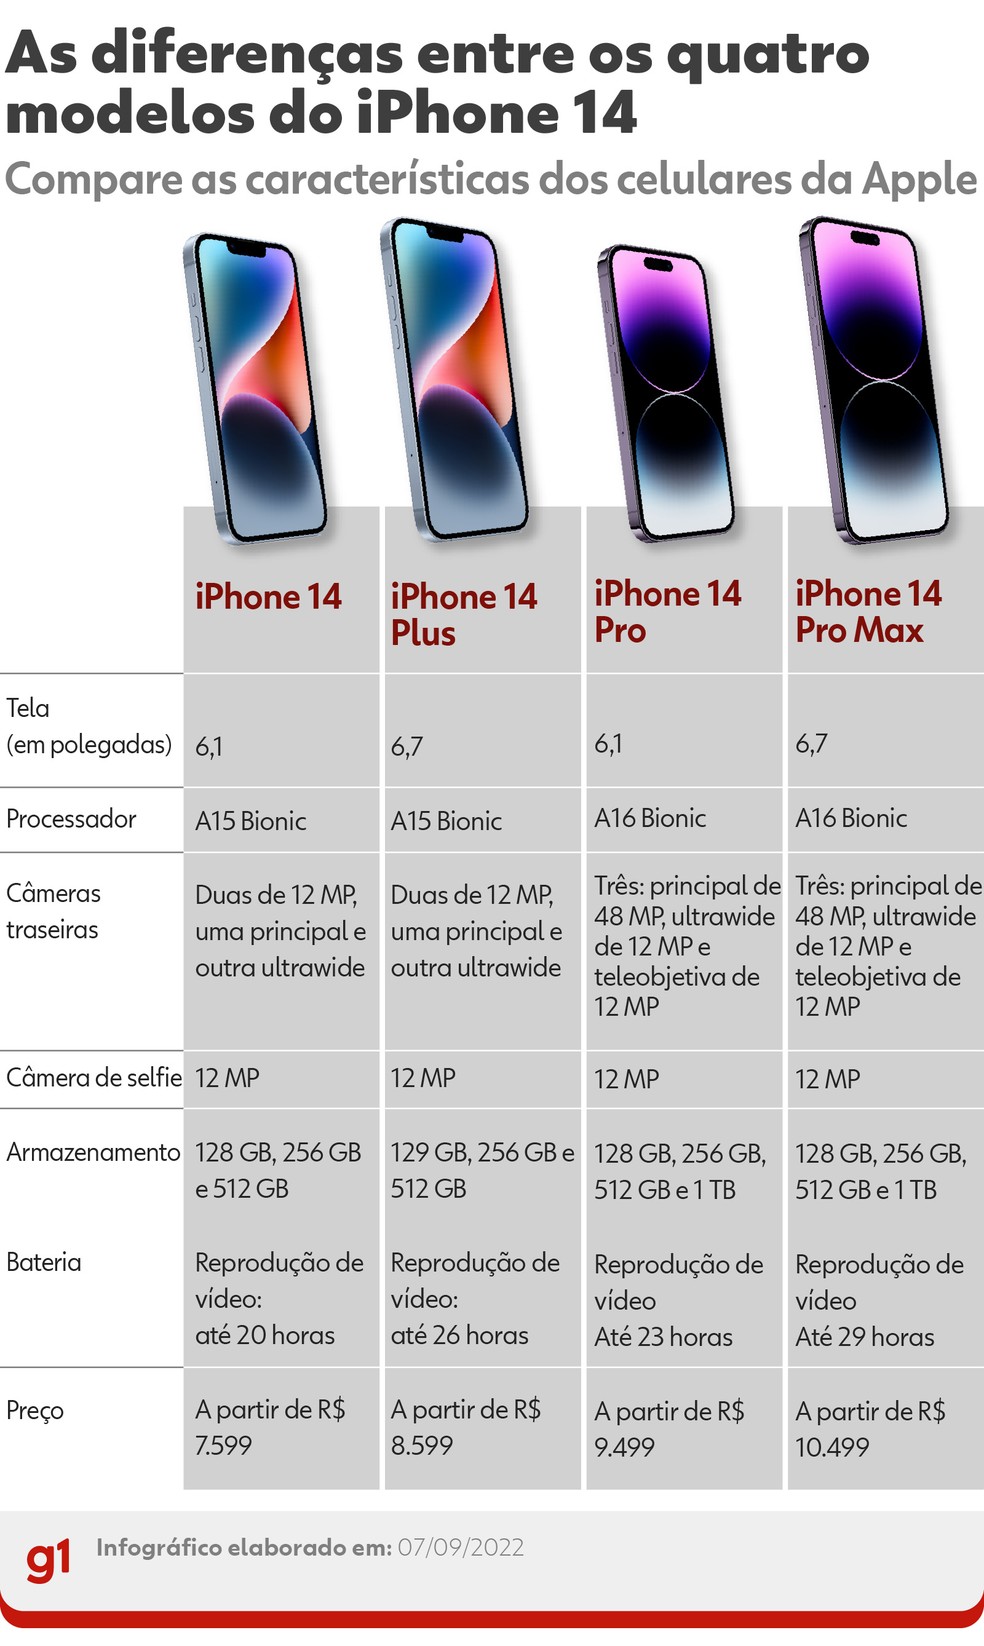 As diferenças entre os modelos do iPhone 14 — Foto: Arte g1